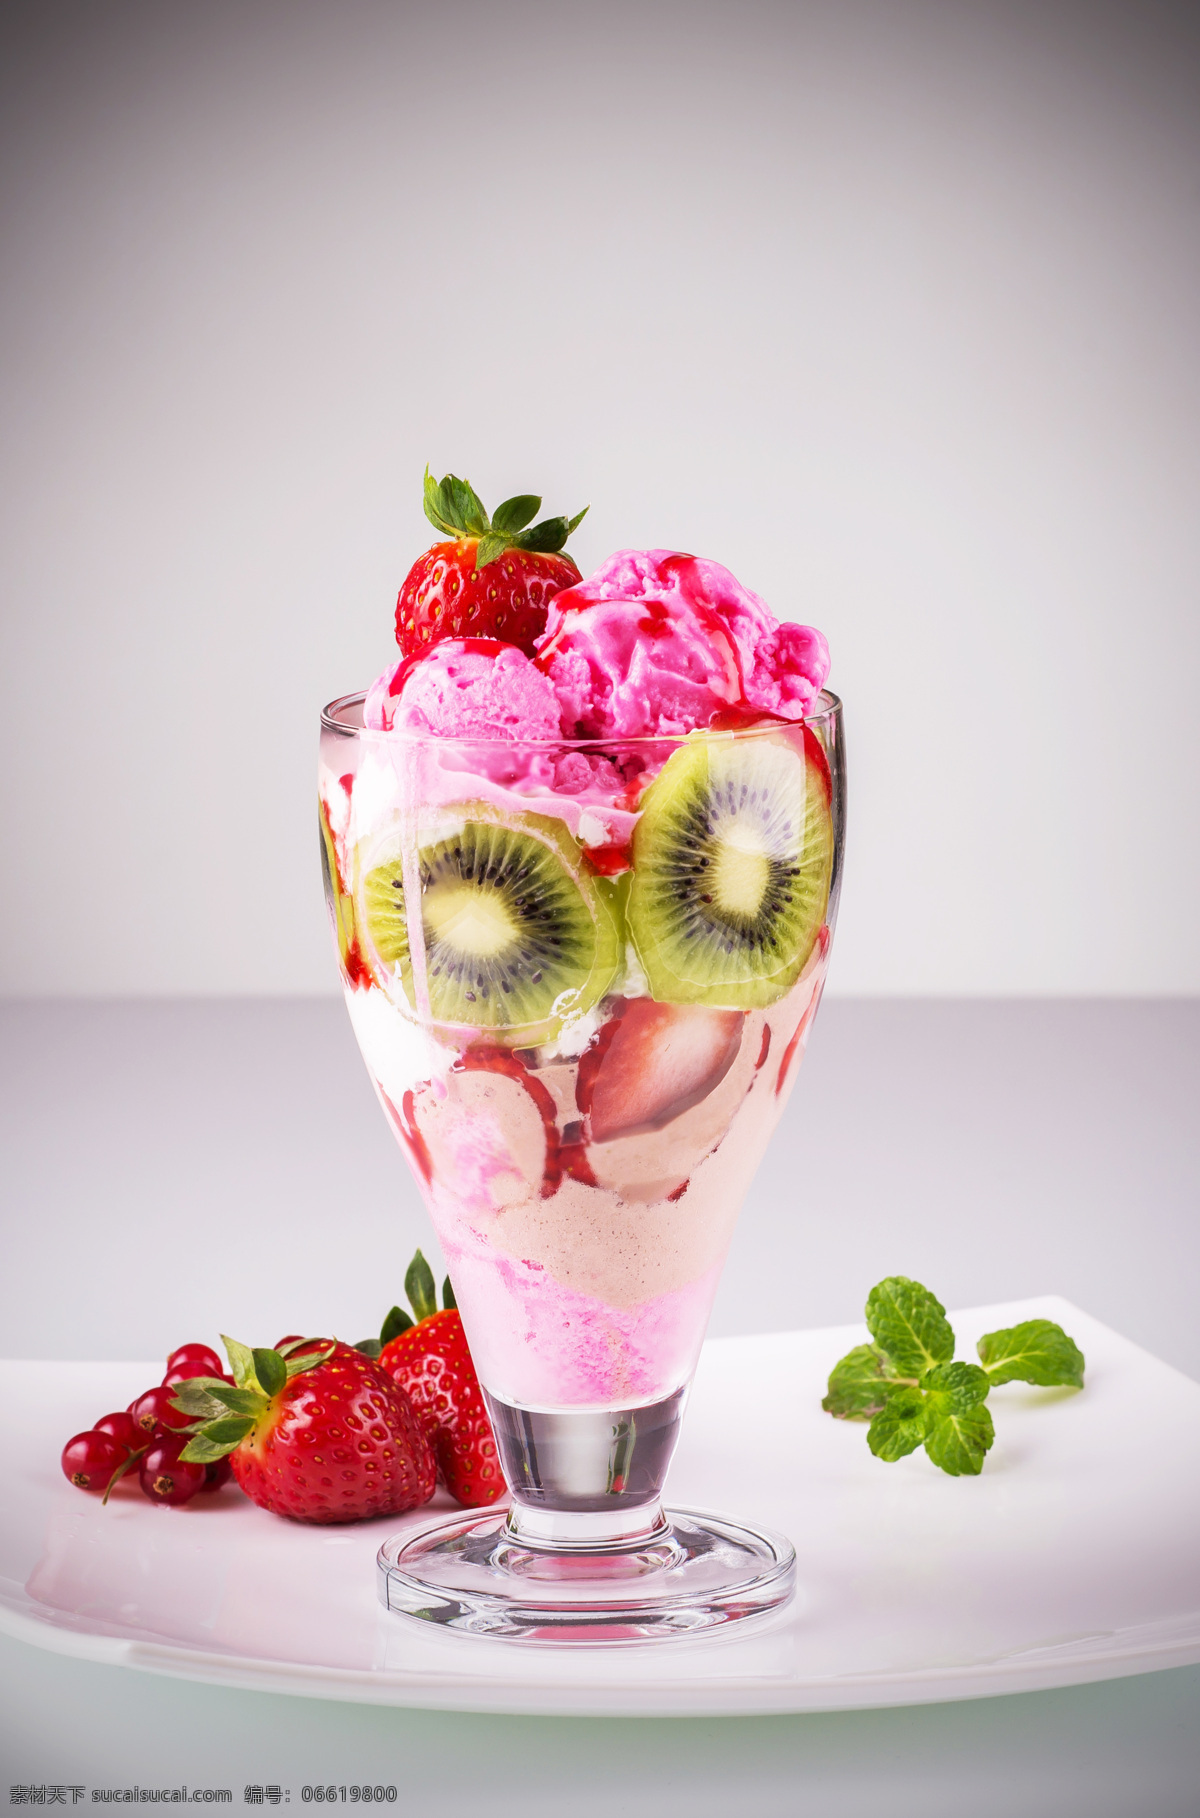 新鲜 水果 冰淇淋 草莓 猕猴桃 冰激凌 甜品美食 美味 食物摄影 其他类别 餐饮美食 灰色